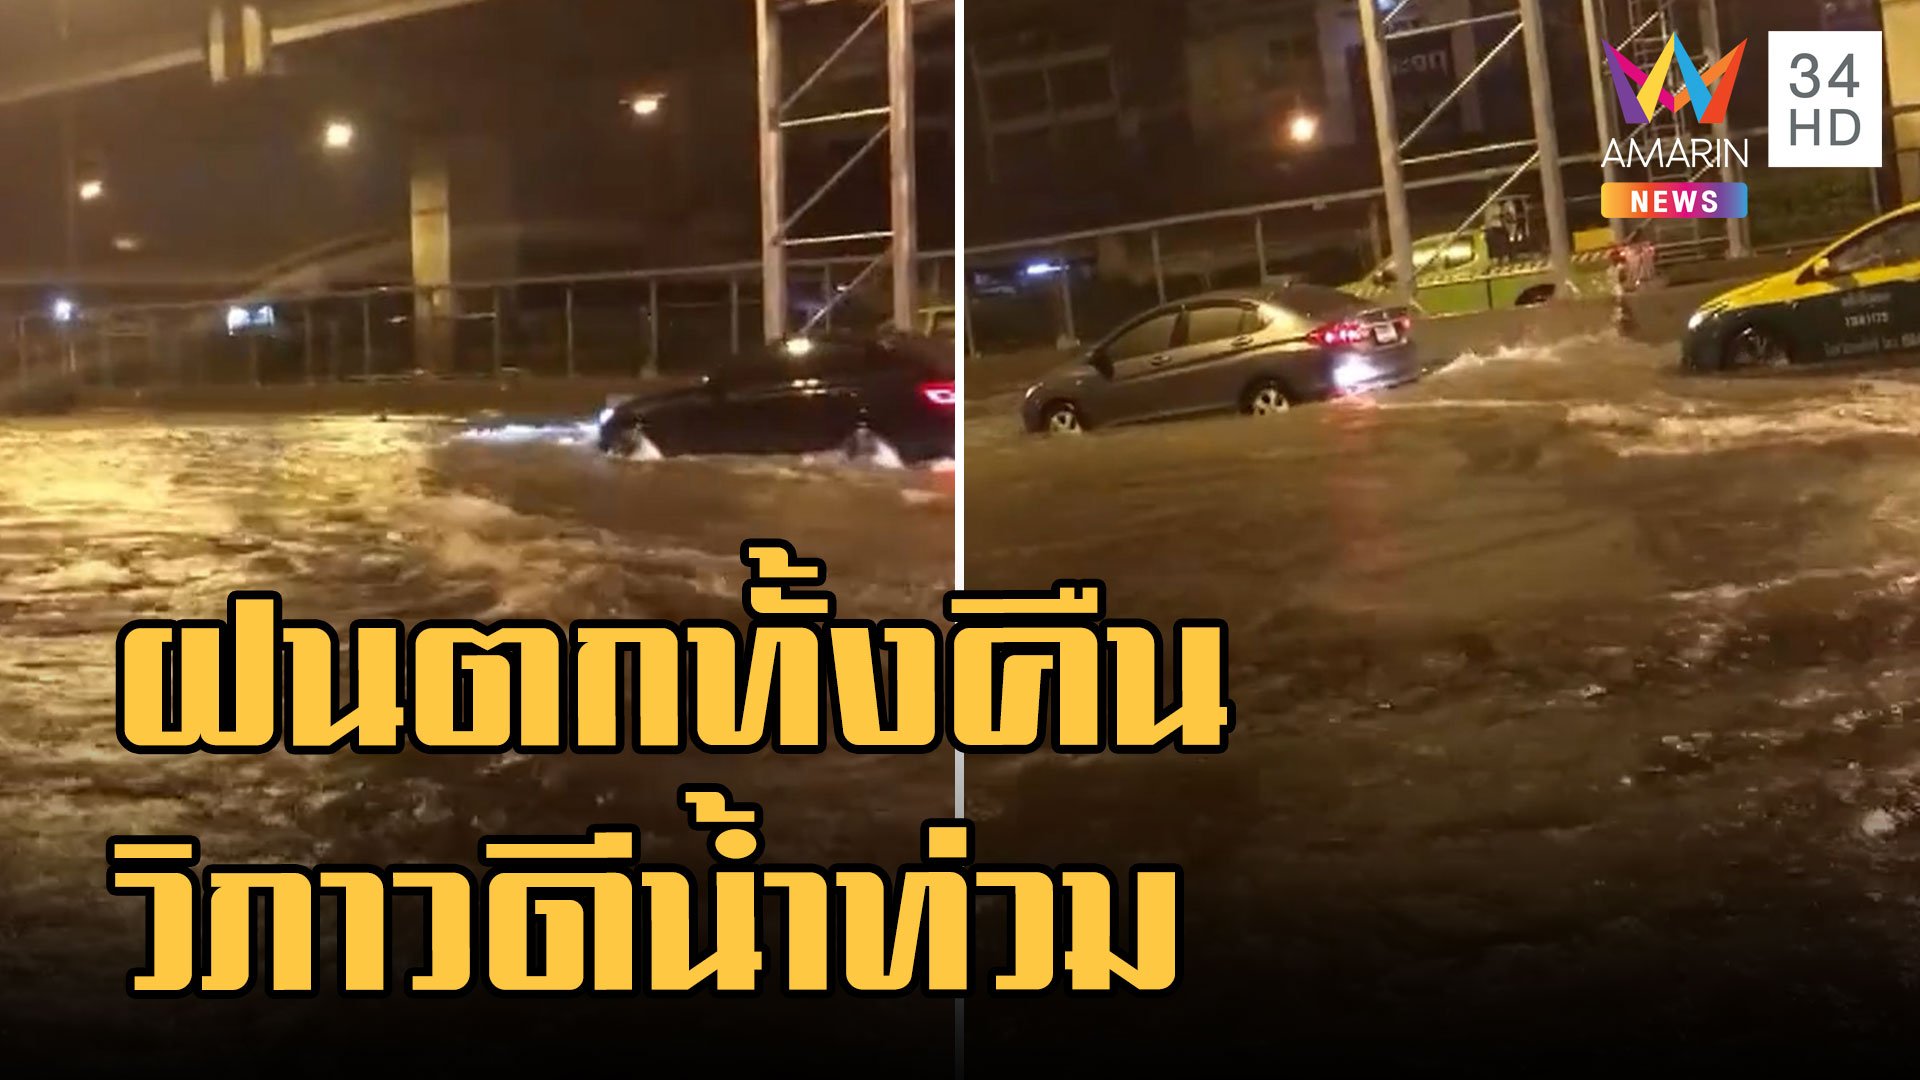 ฝนตกทั้งคืนท่วมถนนวิภาวีรังสิต น้ำสูง 10-15 ซม. หลายชั่วโมงกว่าจะลด | ข่าวอรุณอมรินทร์ | 25 ก.ย. 65 | AMARIN TVHD34